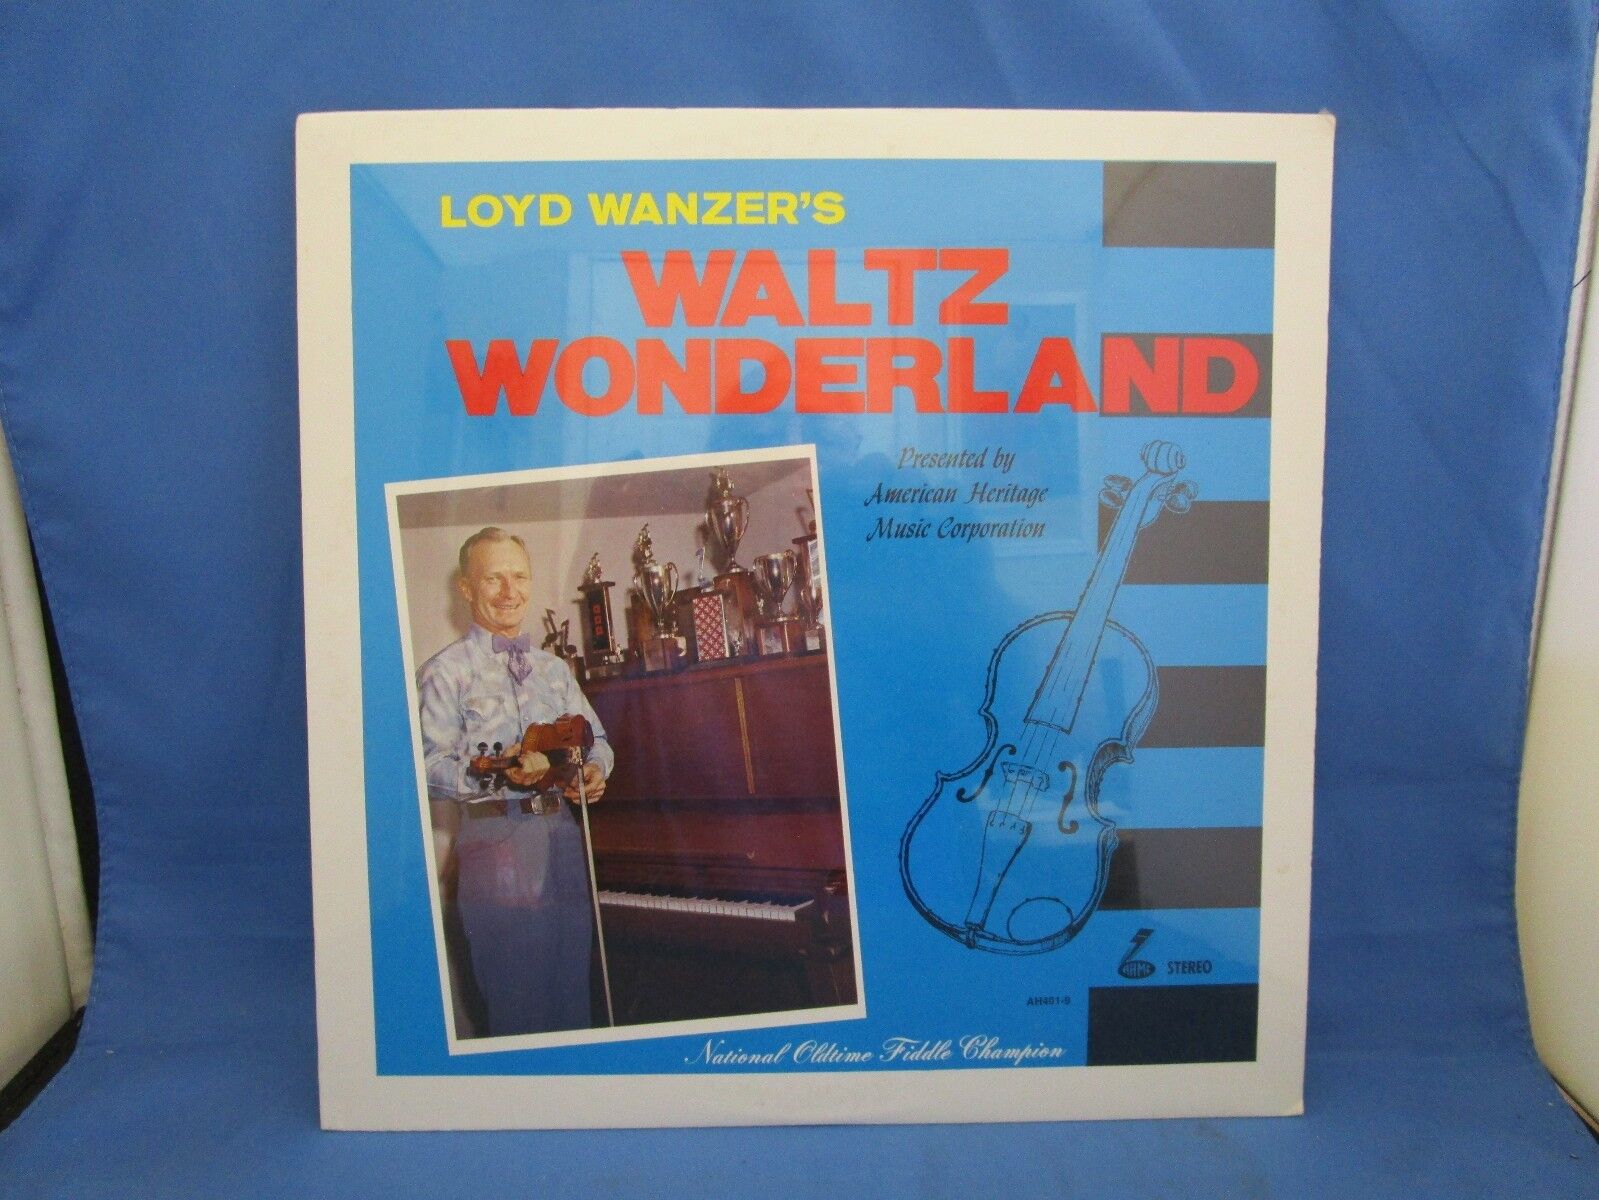 LOYD WANZER'S WALTZ WONDERLAND RECORD ALBUM LP 33 VINTAGE 1969 AH4079